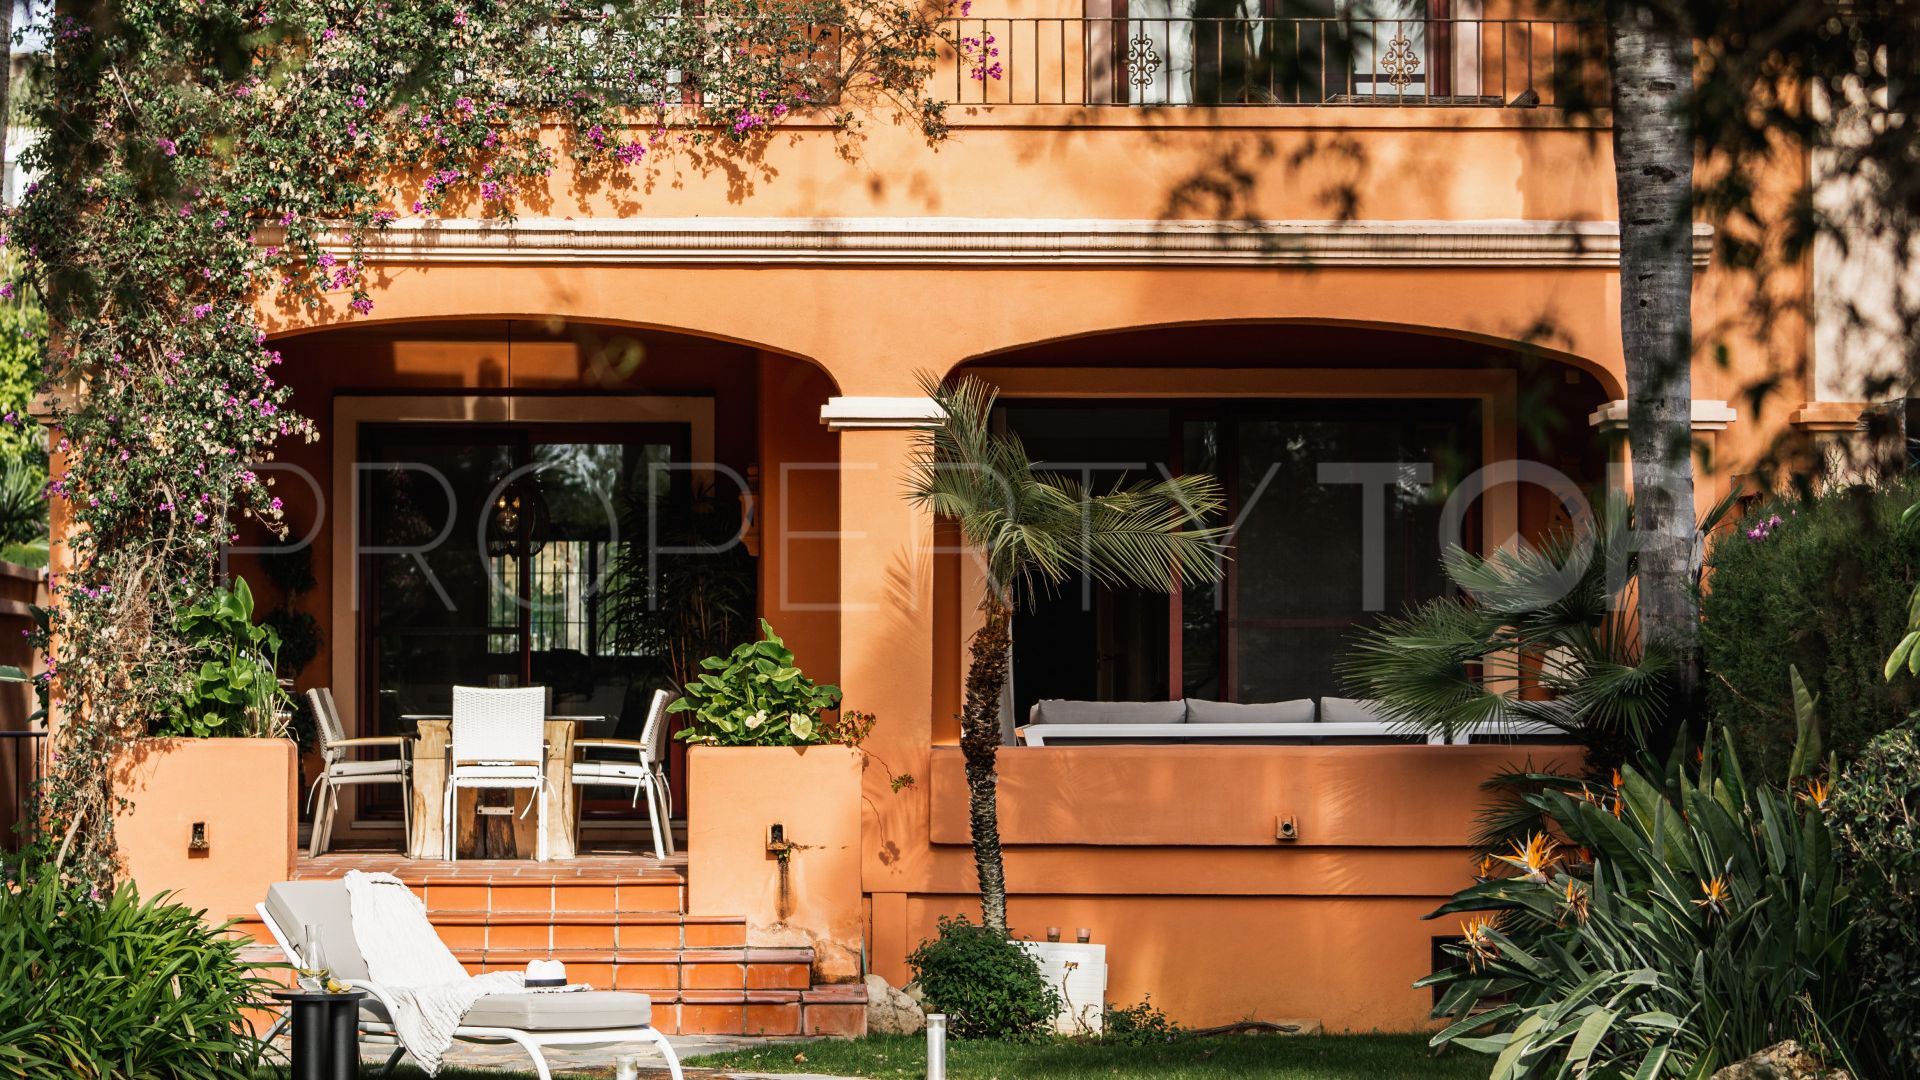 6 bedrooms villa for sale in La Alzambra